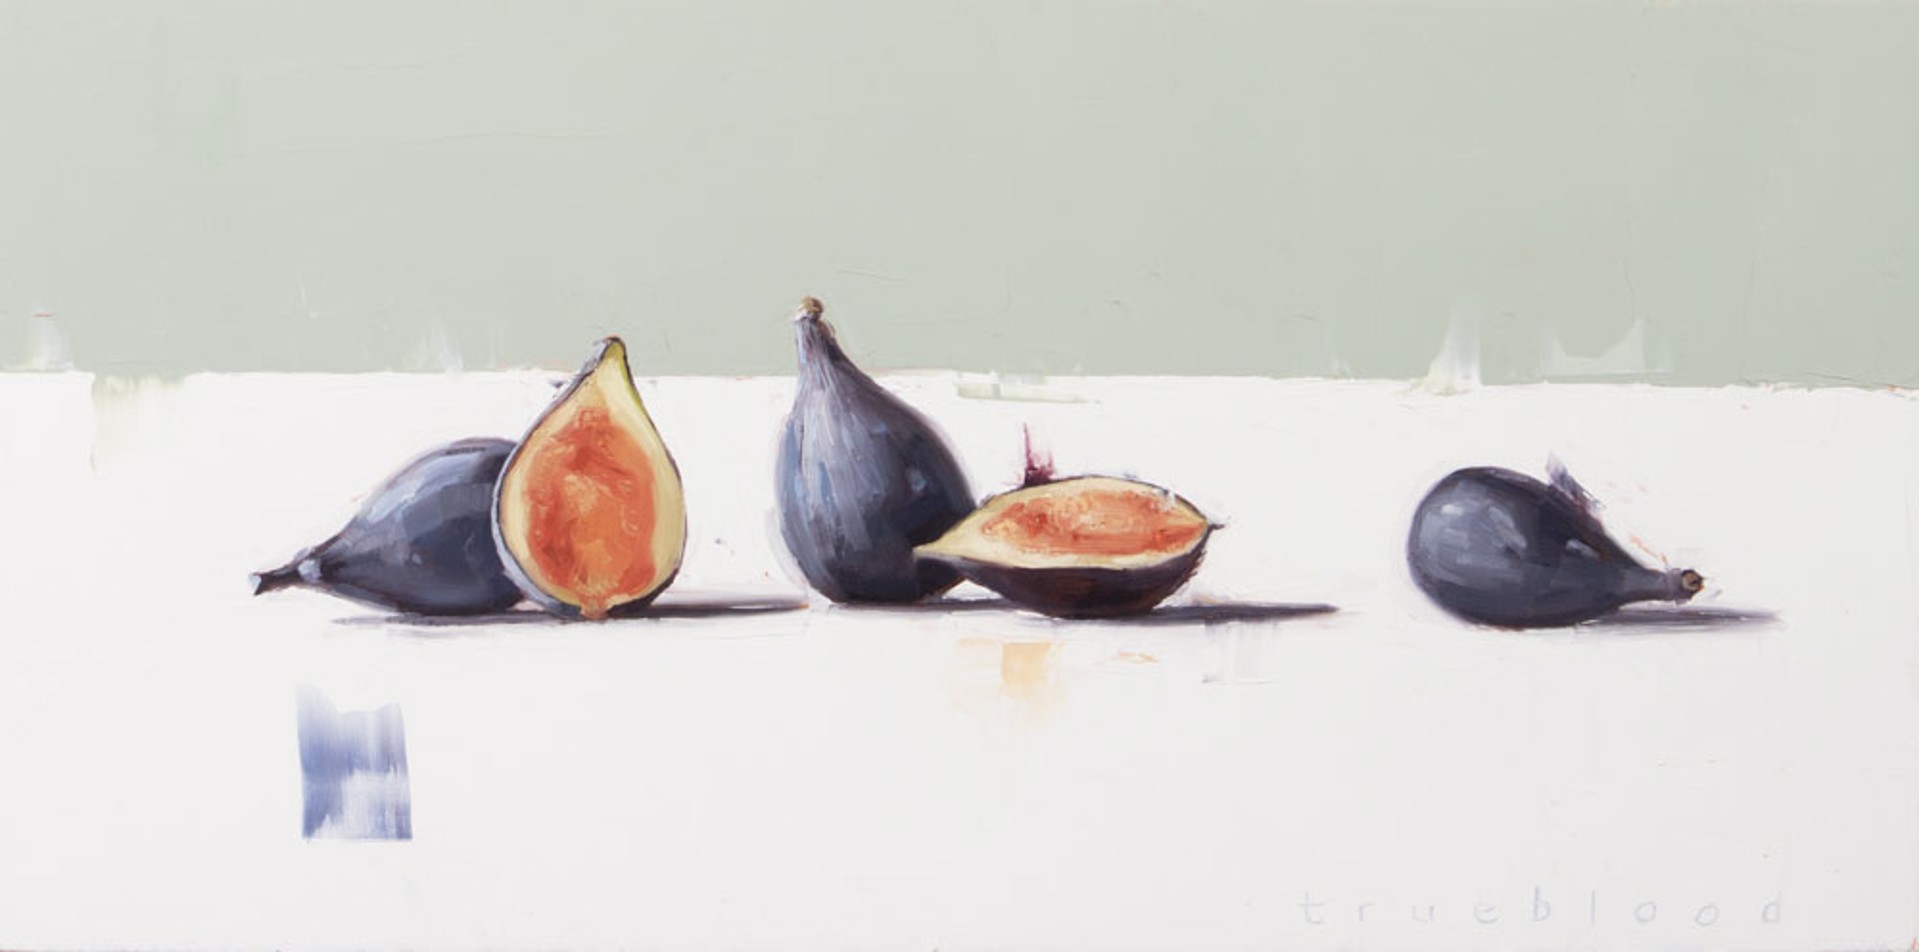 Figs by Megan Trueblood